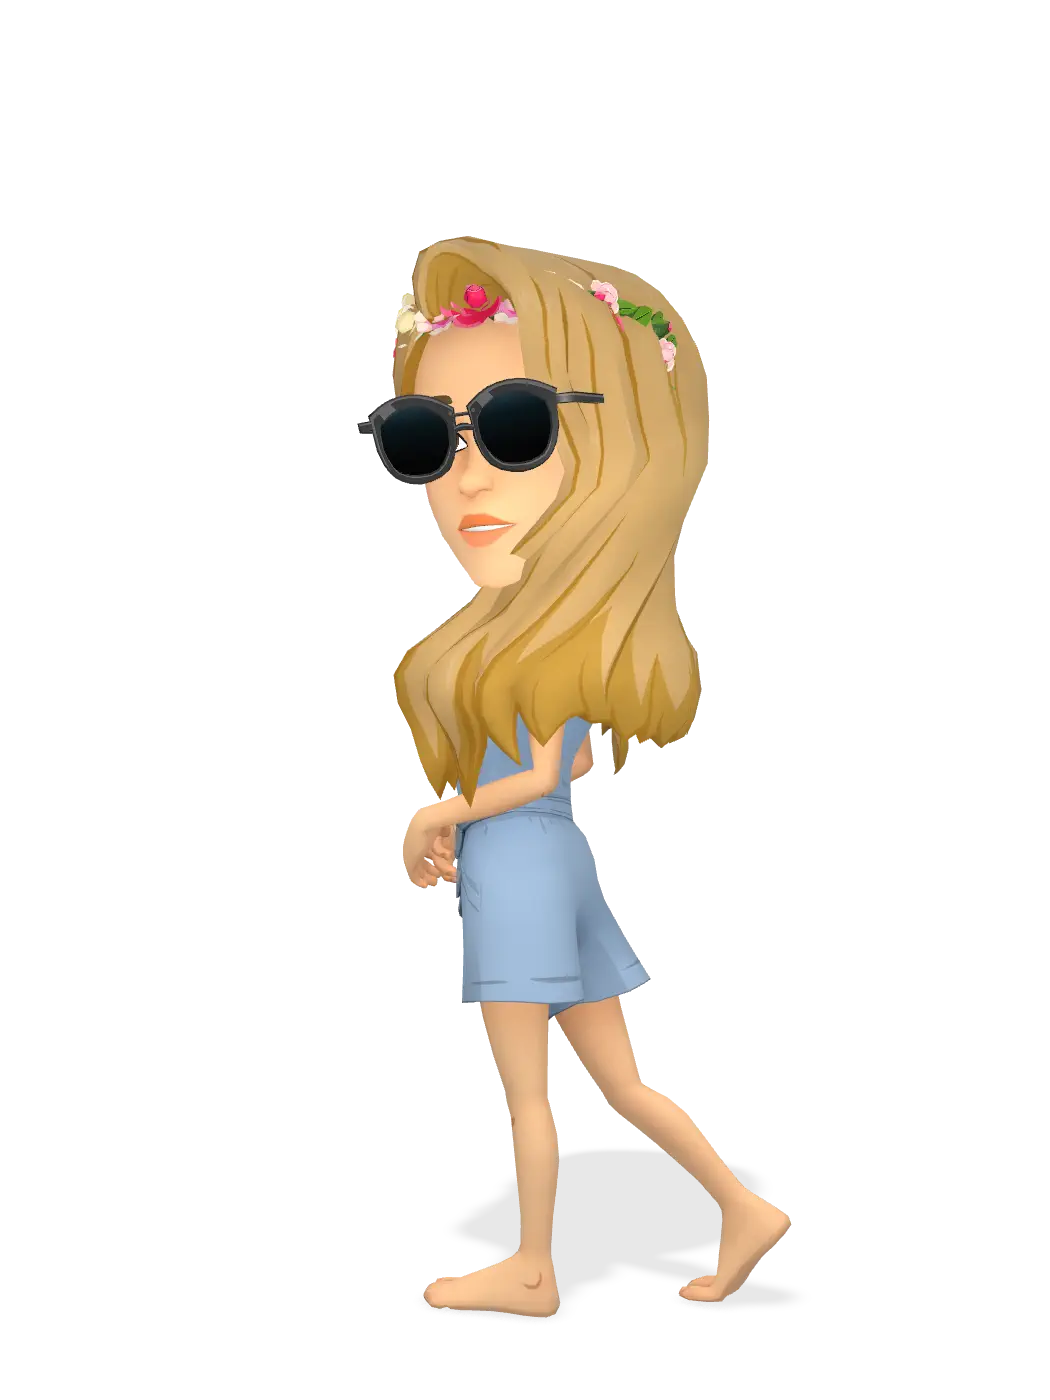 3D Bitmoji for frenchexplorers avatar